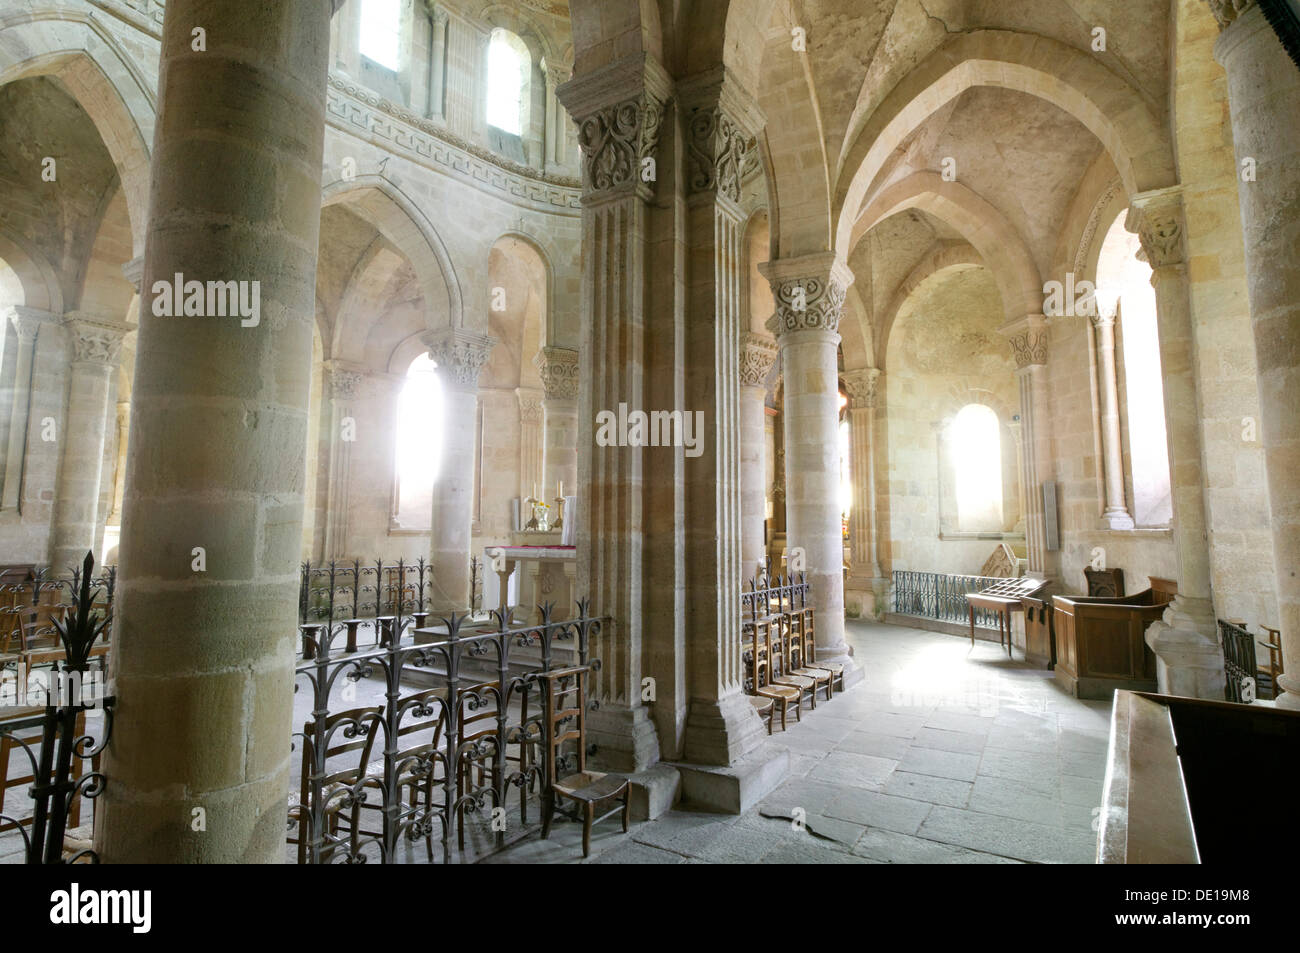 The Romanesque church of Saint-Menoux, Bourbonnais, Allier, Auvergne, France, Europe Stock Photo